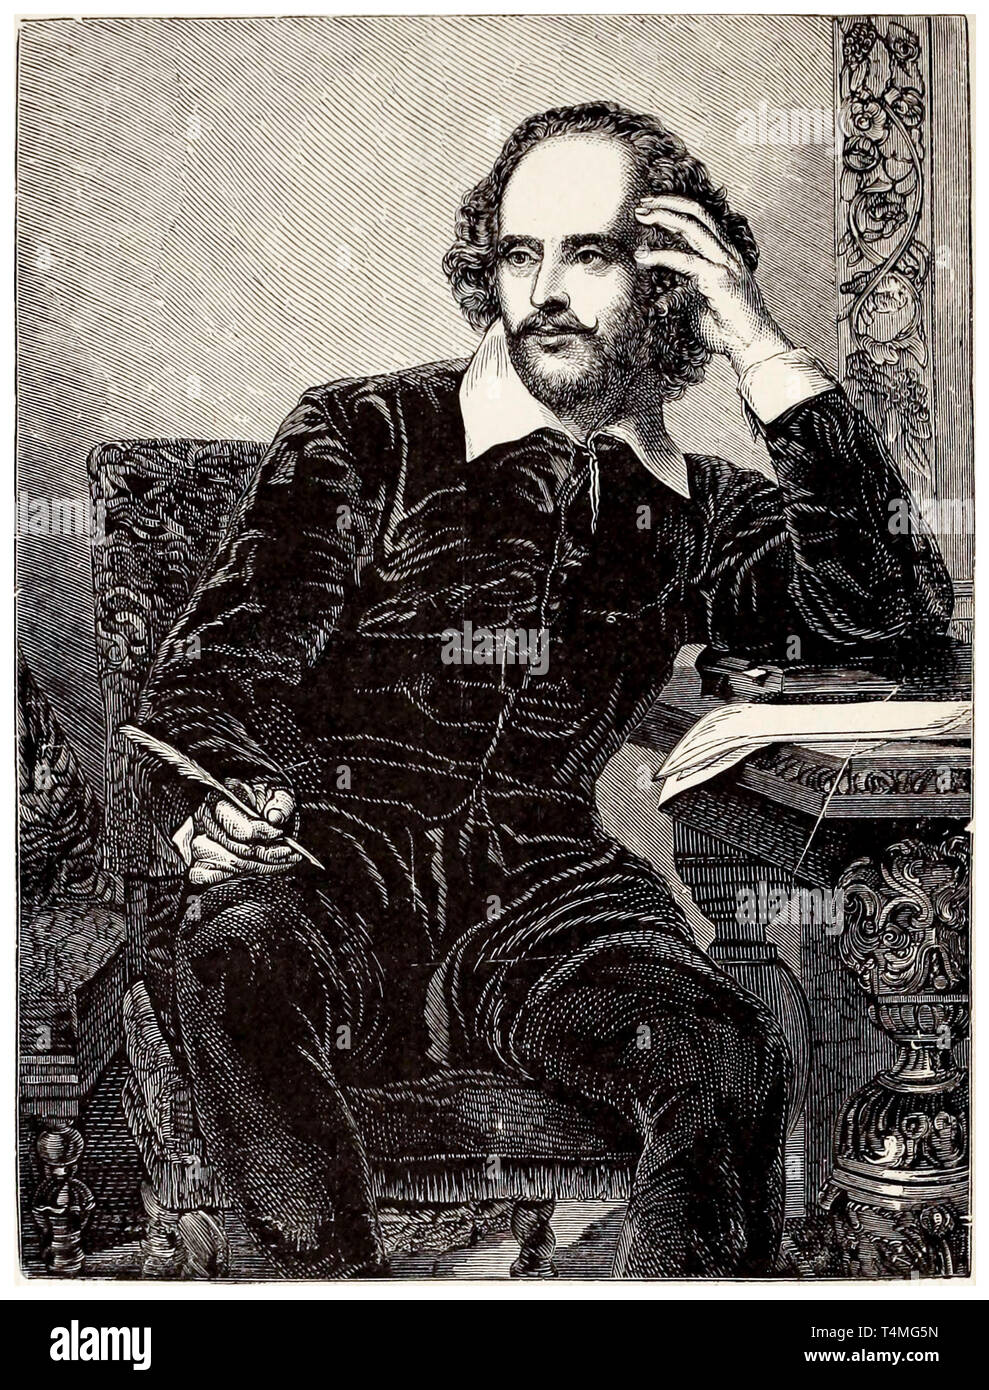 William Shakespeare (1564-1616), ritratto di incisione, 1898 Foto Stock